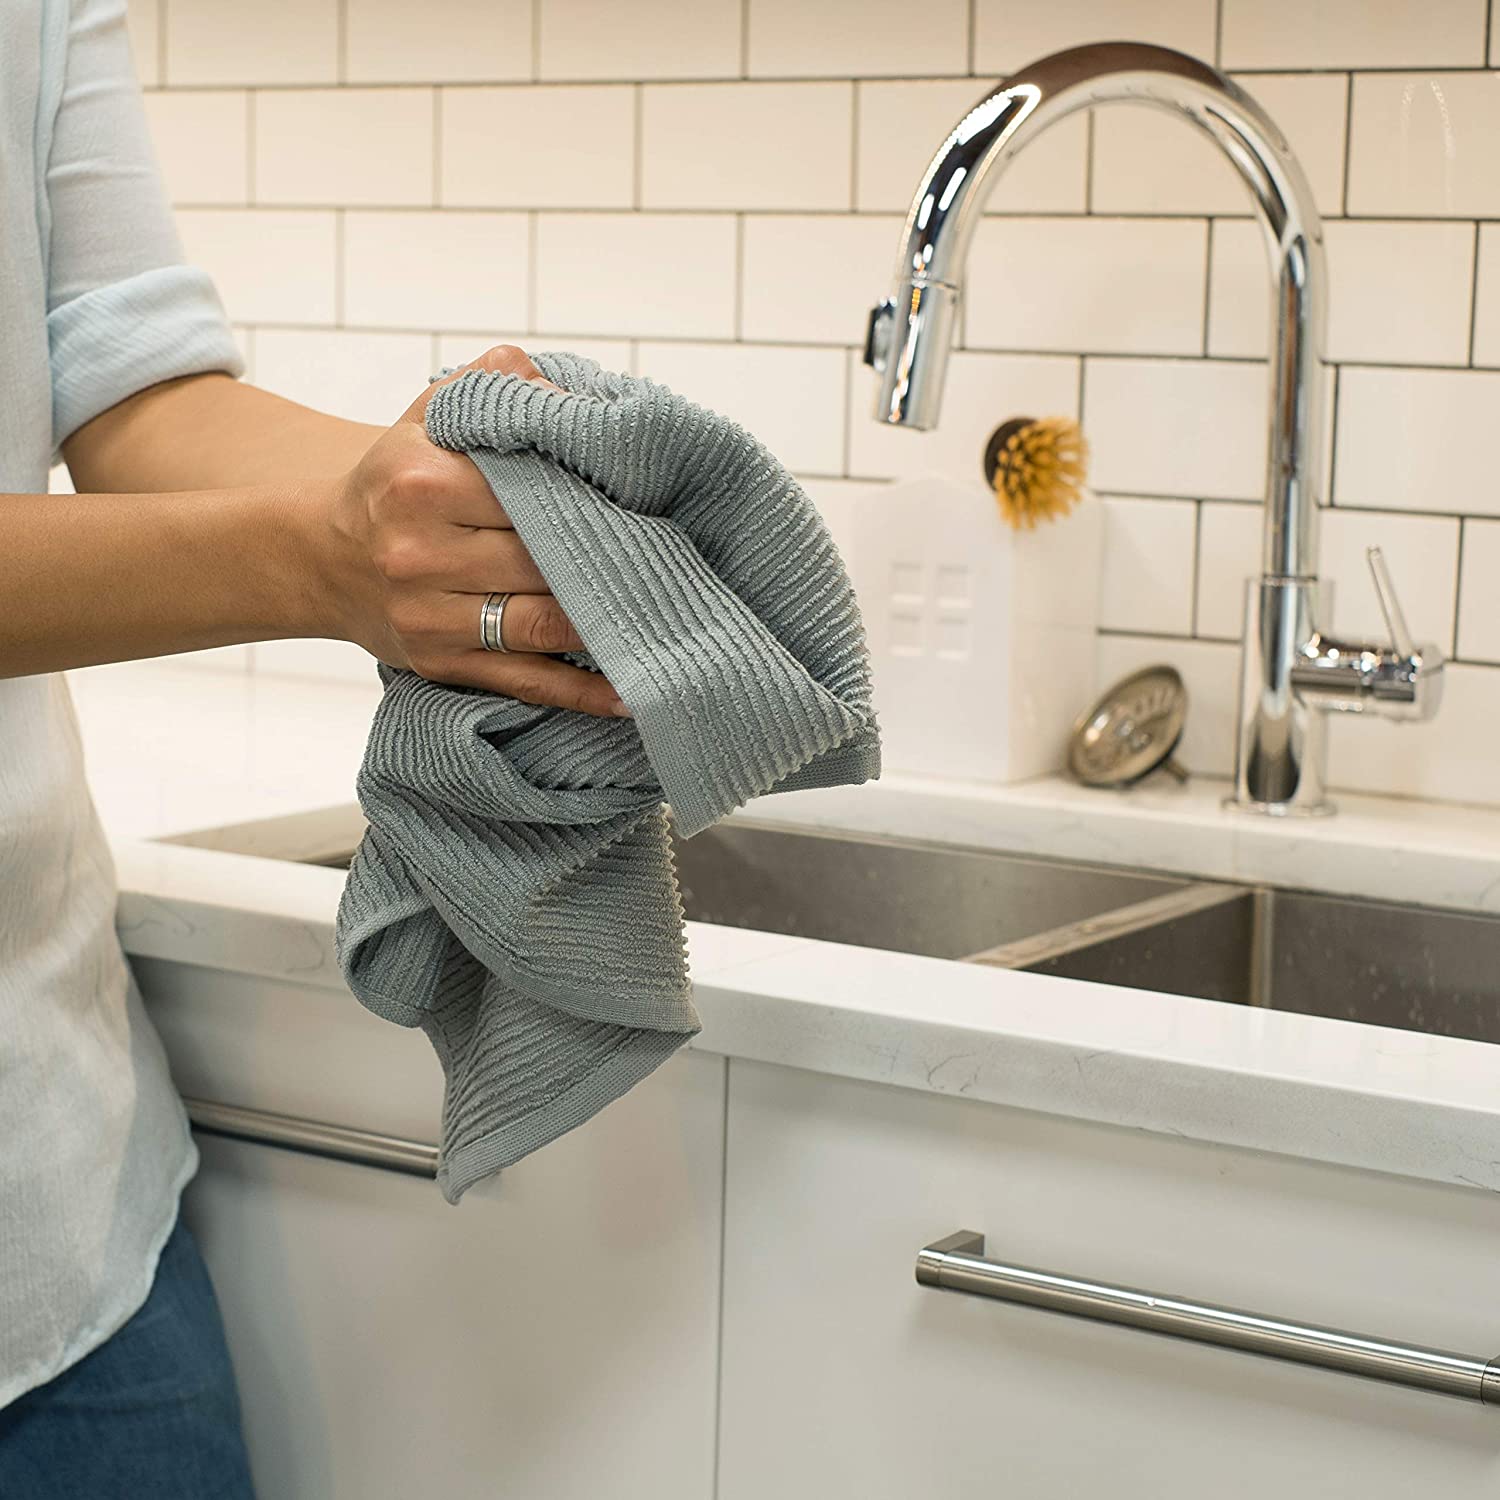 hands holding dishtowel at kitchen sink.